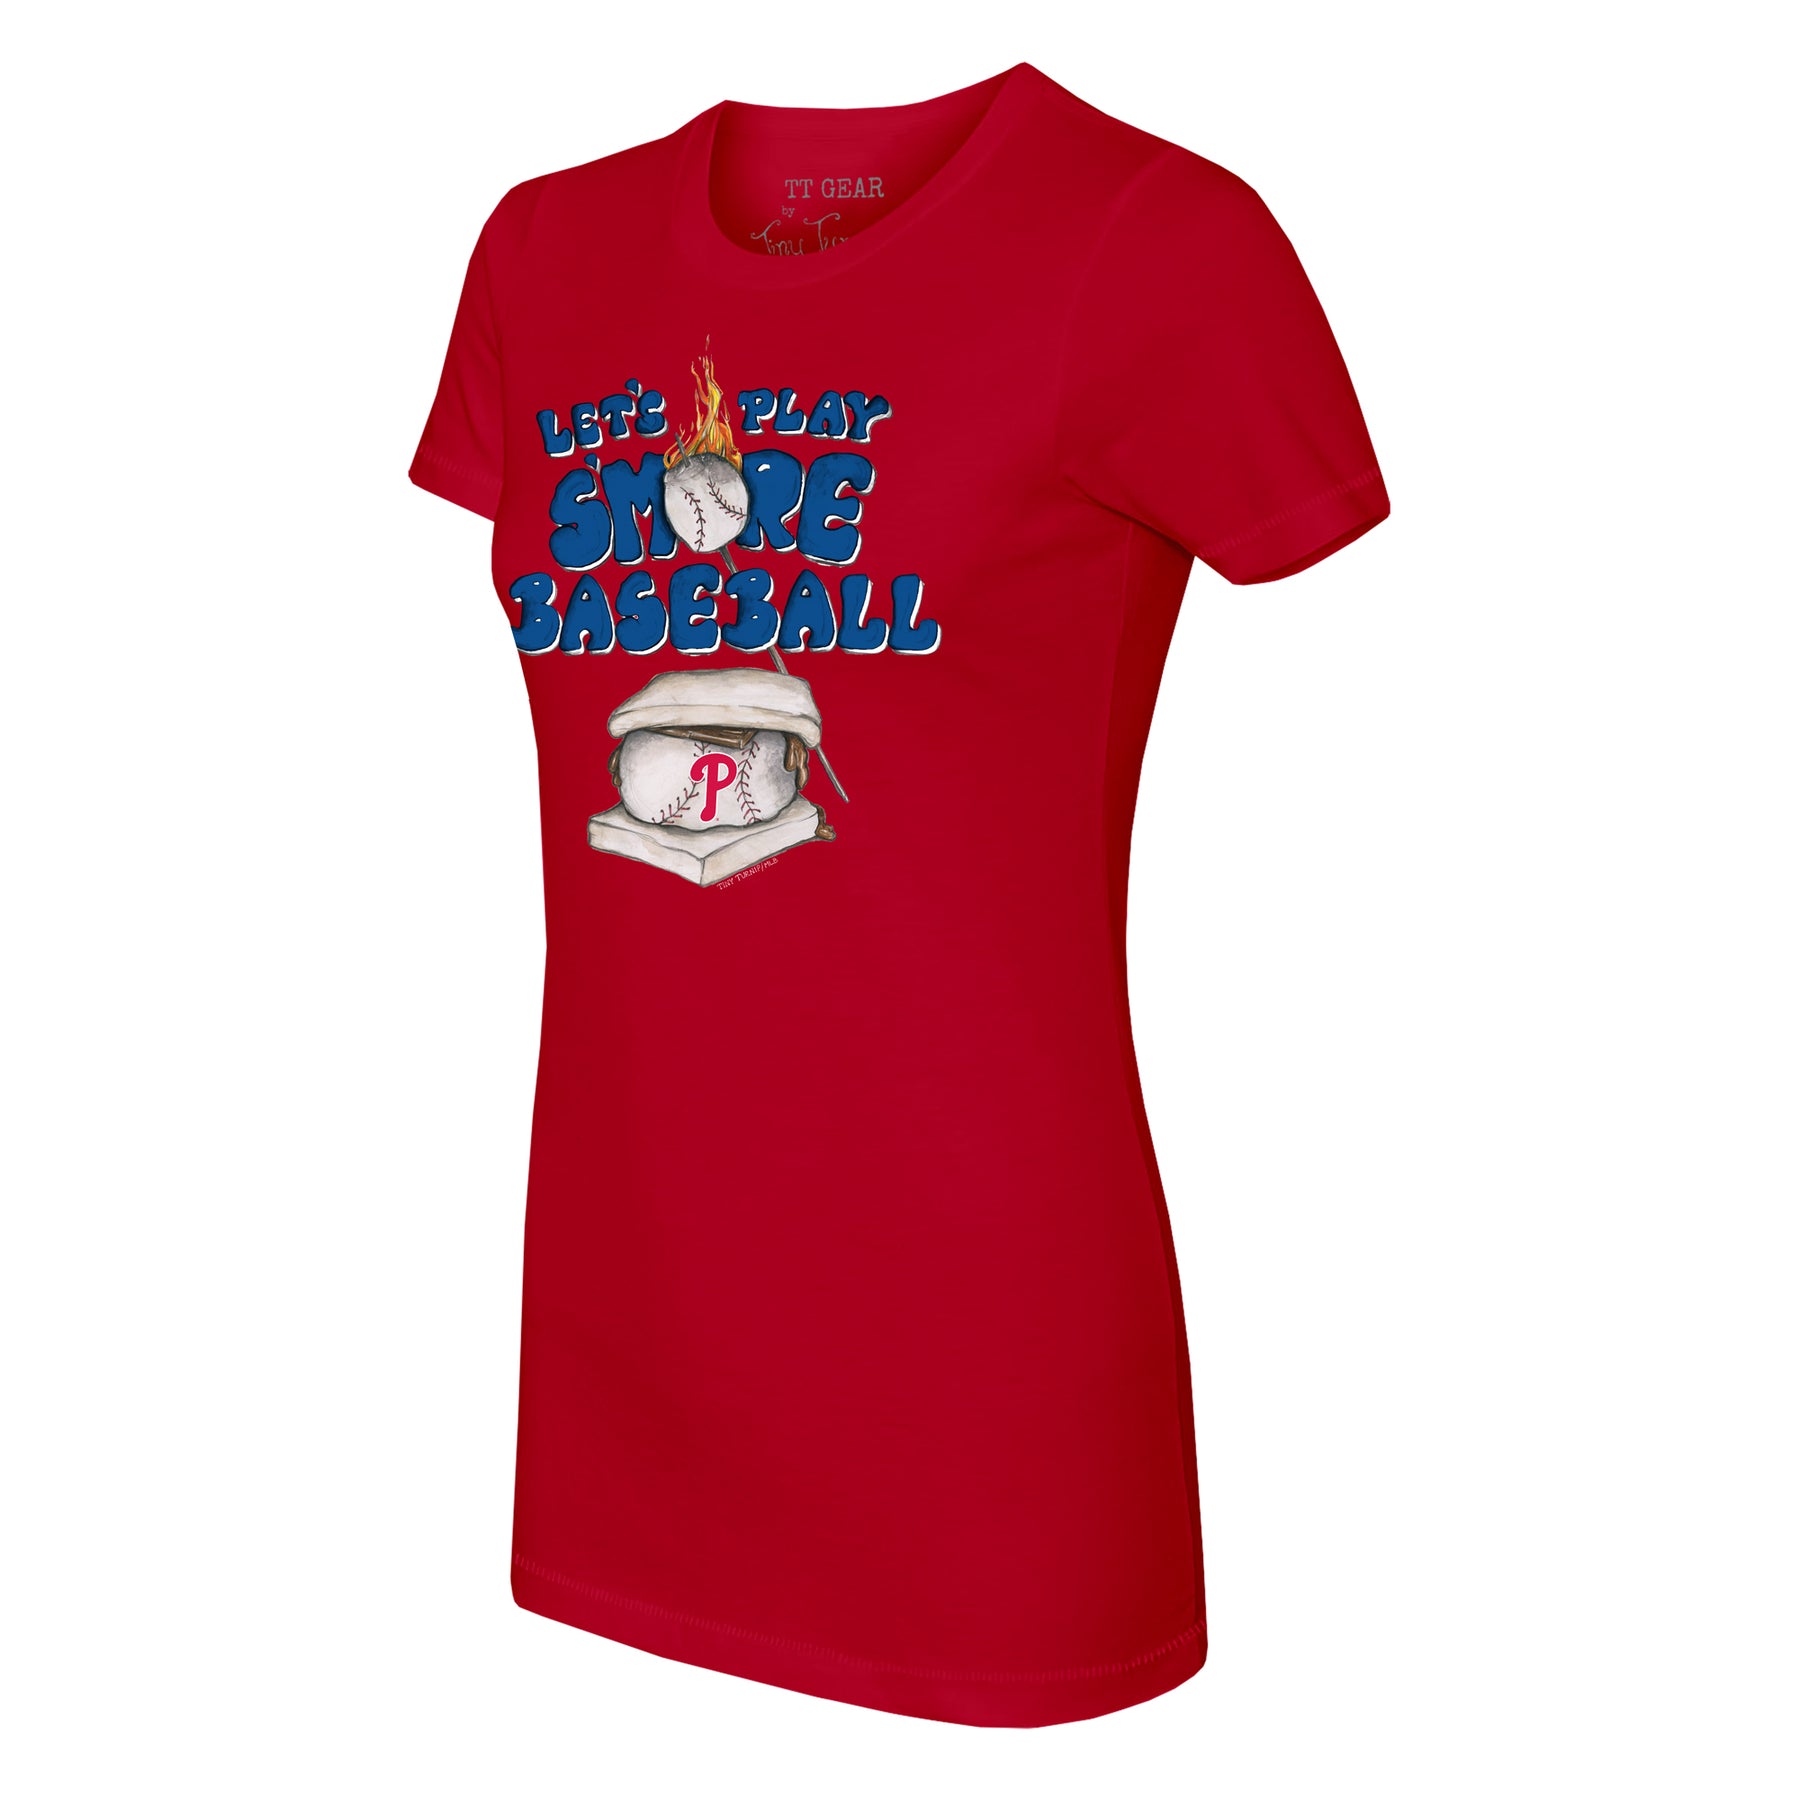 Tiny Turnip Philadelphia Phillies S'mores Tee Shirt Women's XL / White